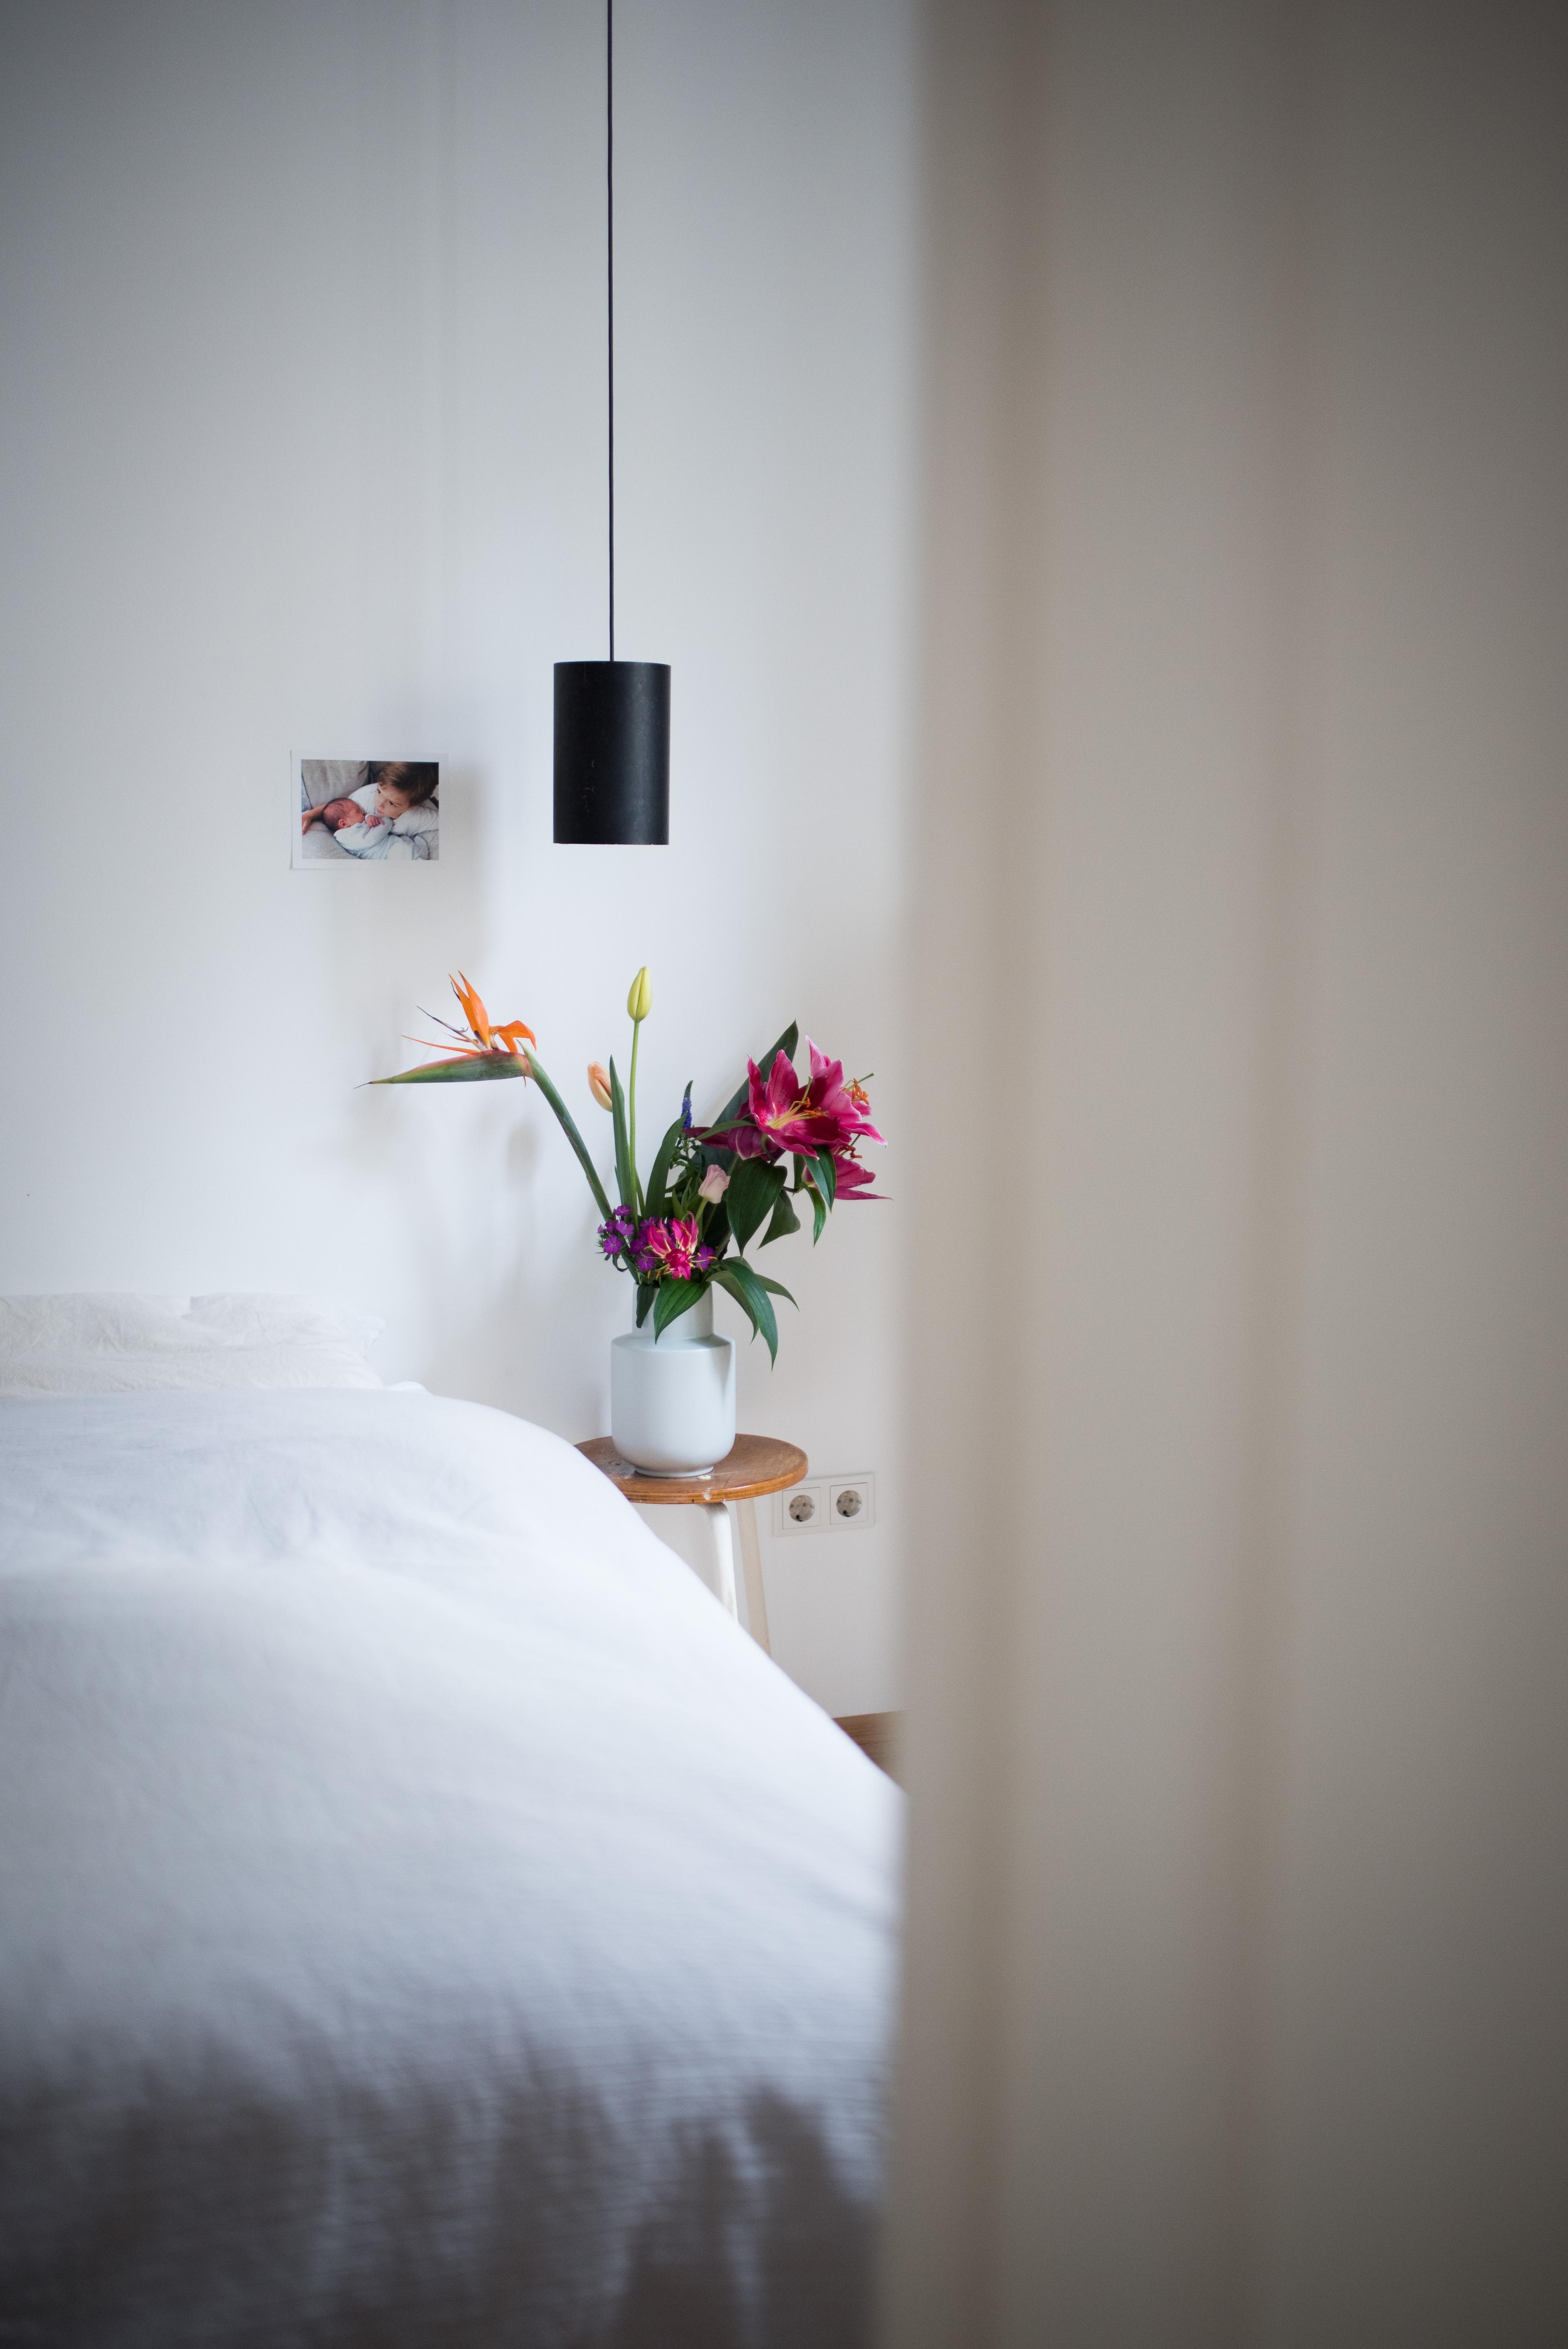 Sonniger Einblick ins Schlafzimmer #interiorinspo #bedroom #schlafzimmer #flowers #vintage